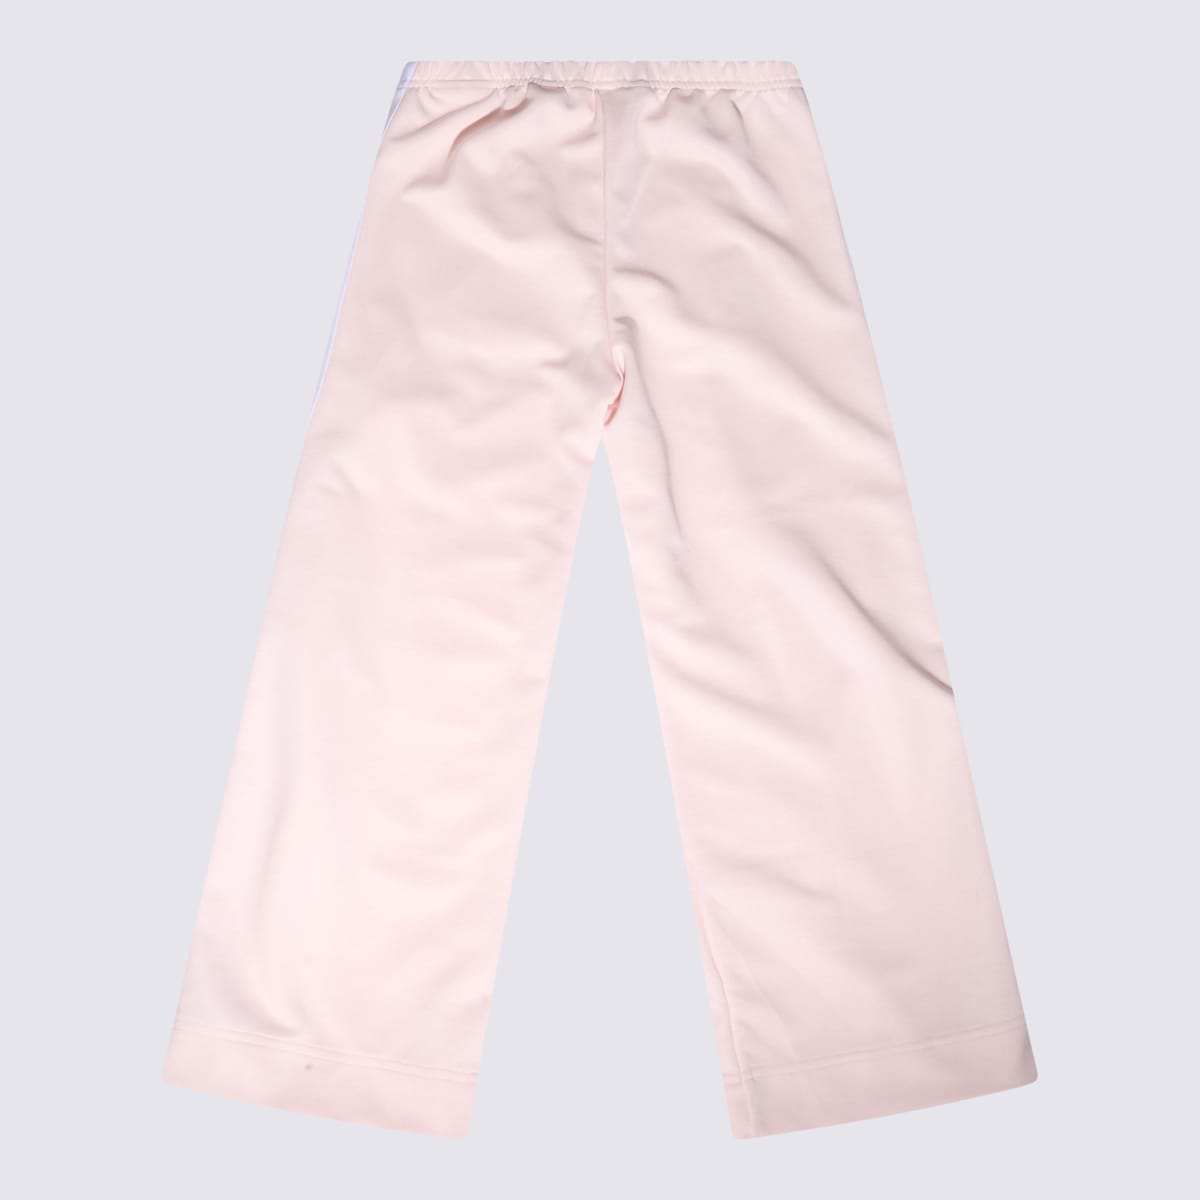 Shop Palm Angels Light Pink Cotton Pants